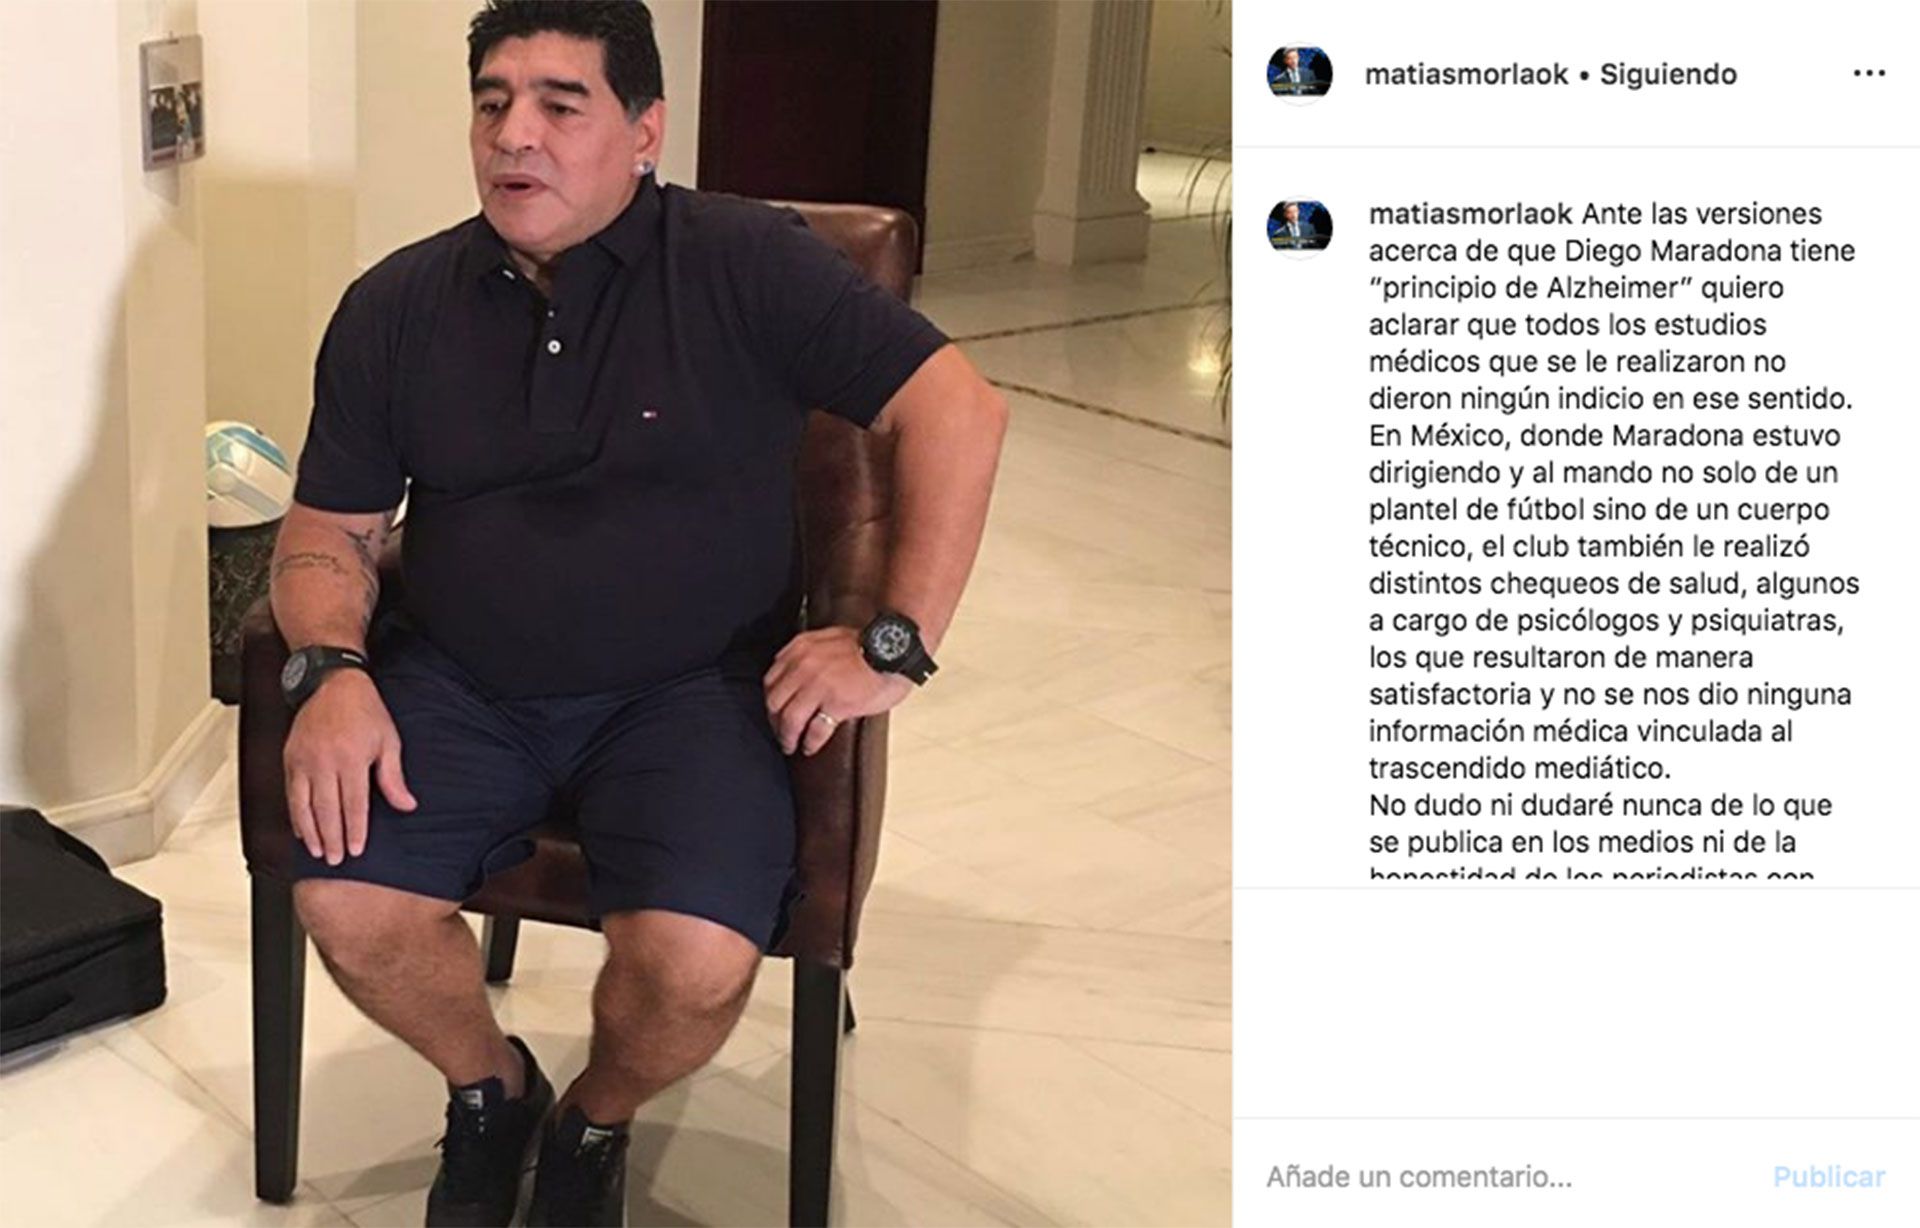 La publicación de Morla, abogado de Maradona: la primera acción para frenar los rumores